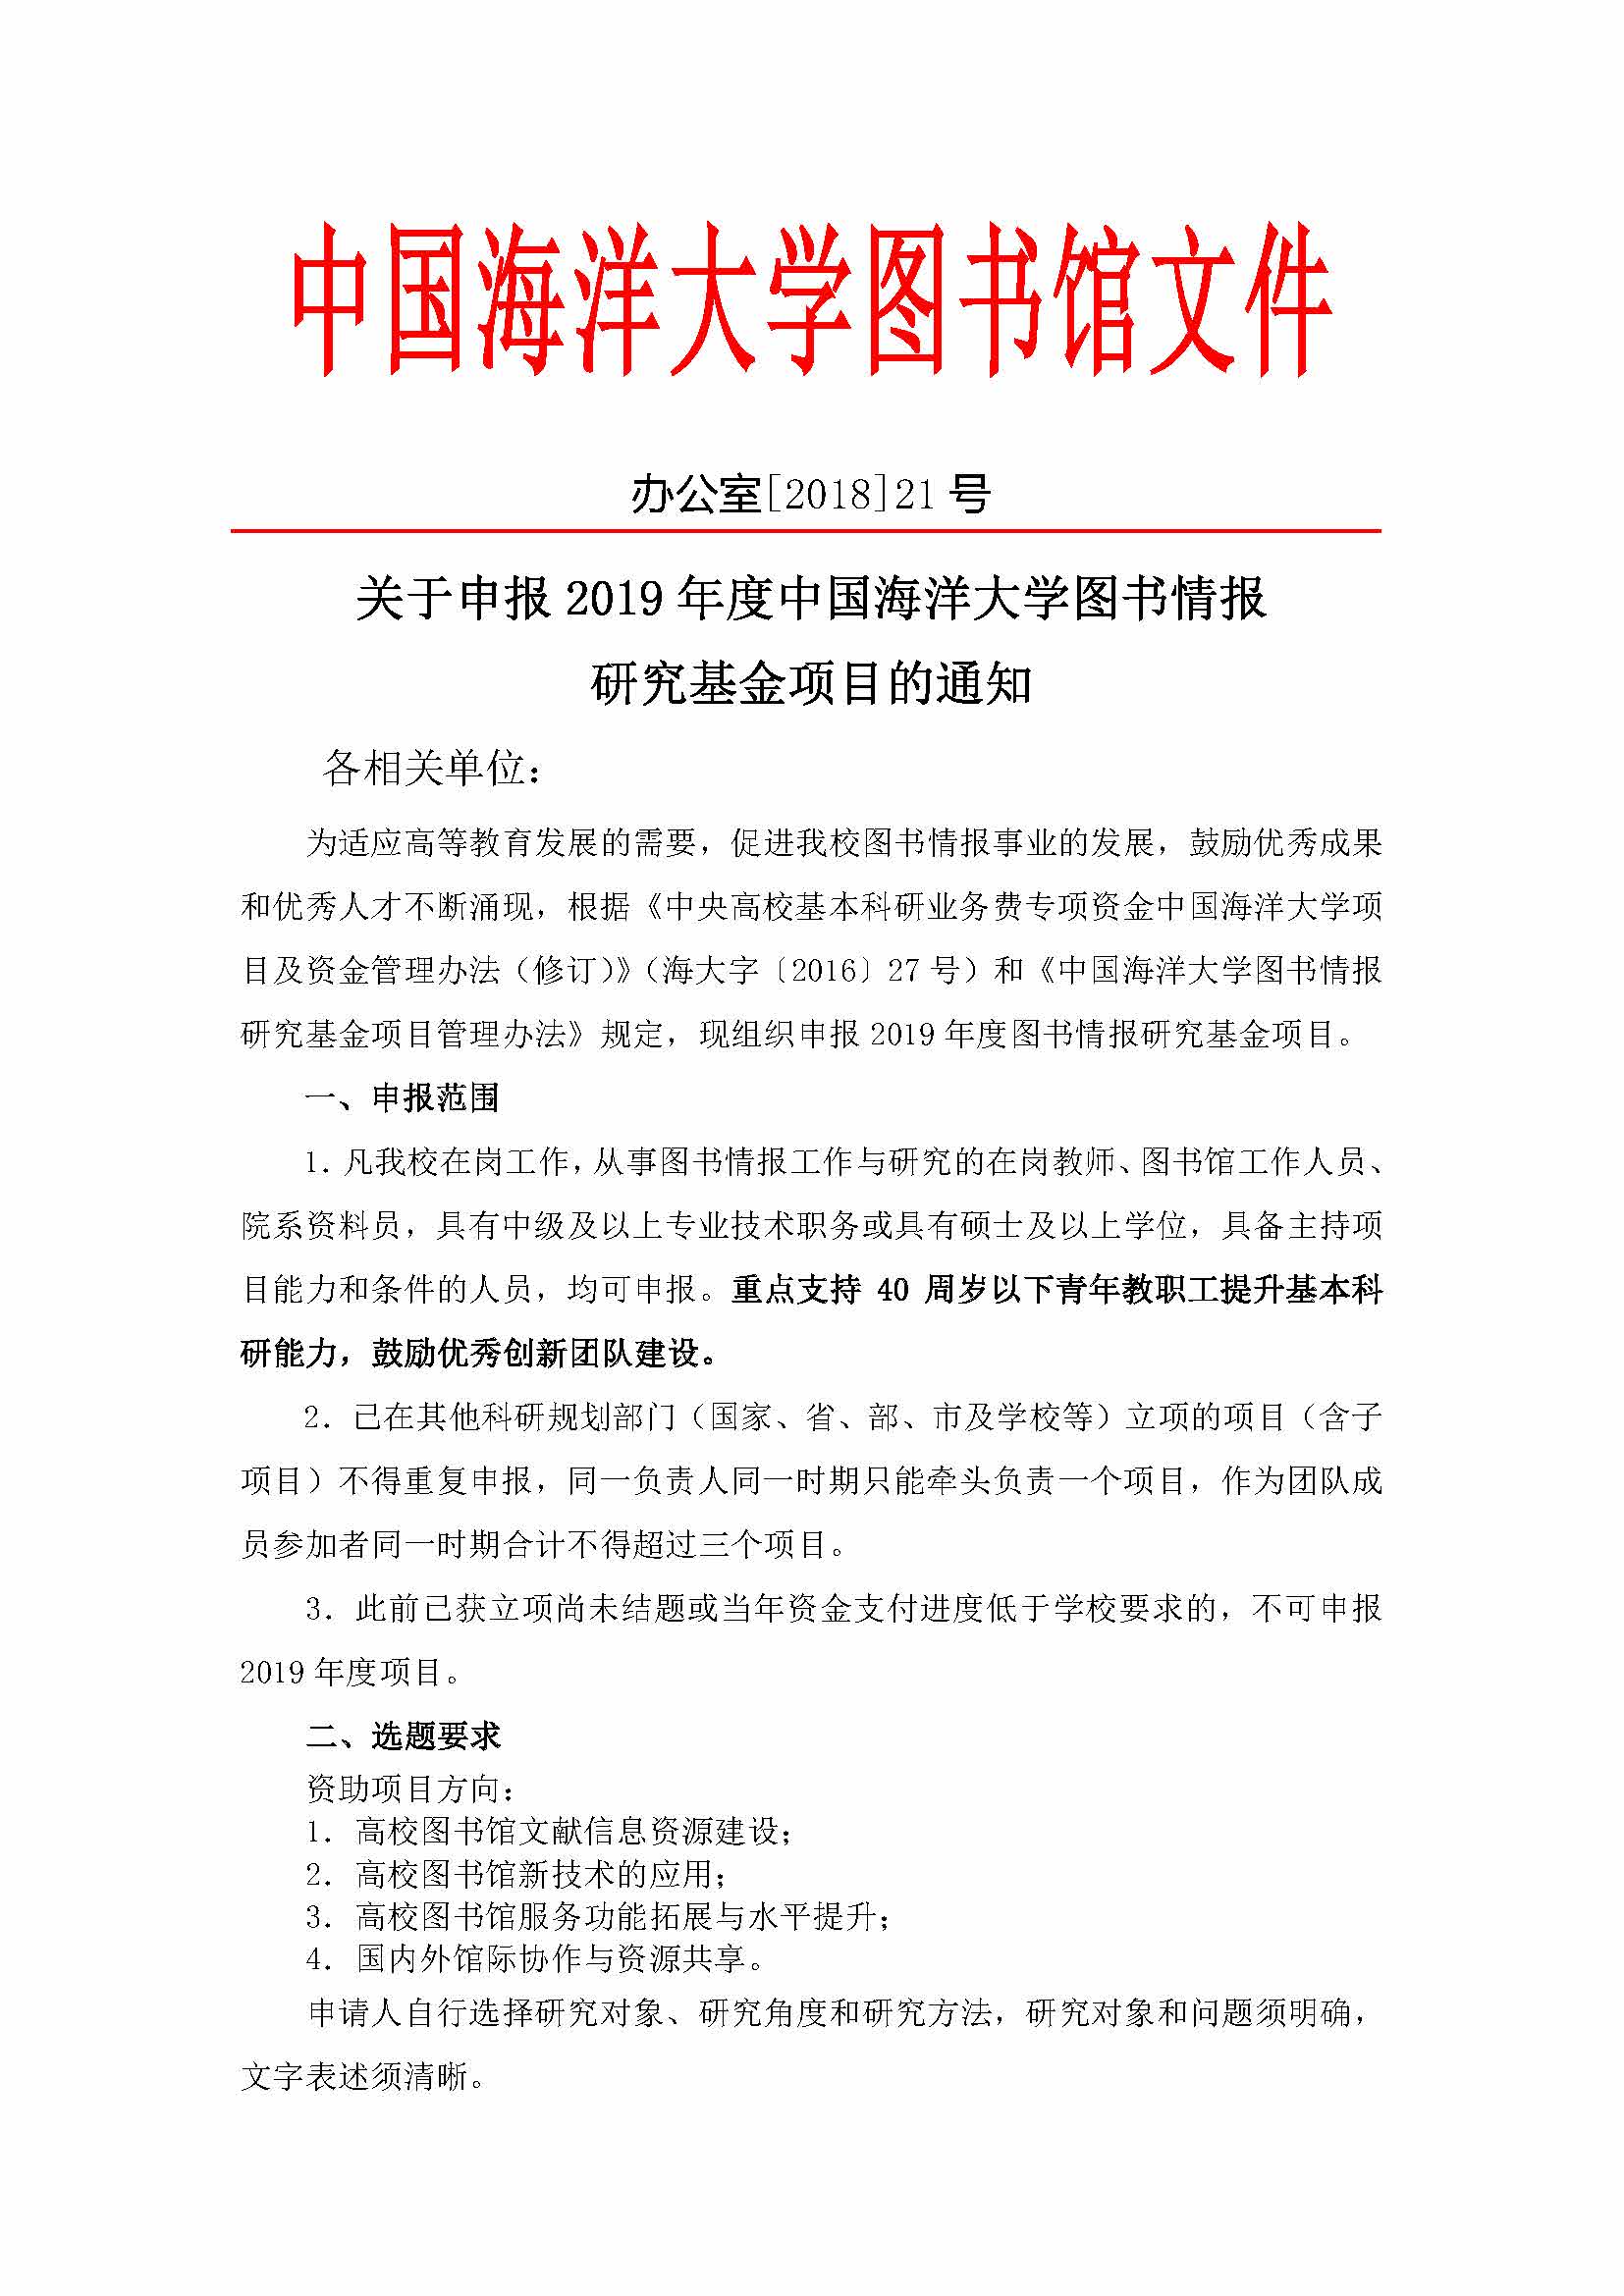 关于申报2019年度中国海洋大学图书情报研究基金项目的通知_页面_1.jpg